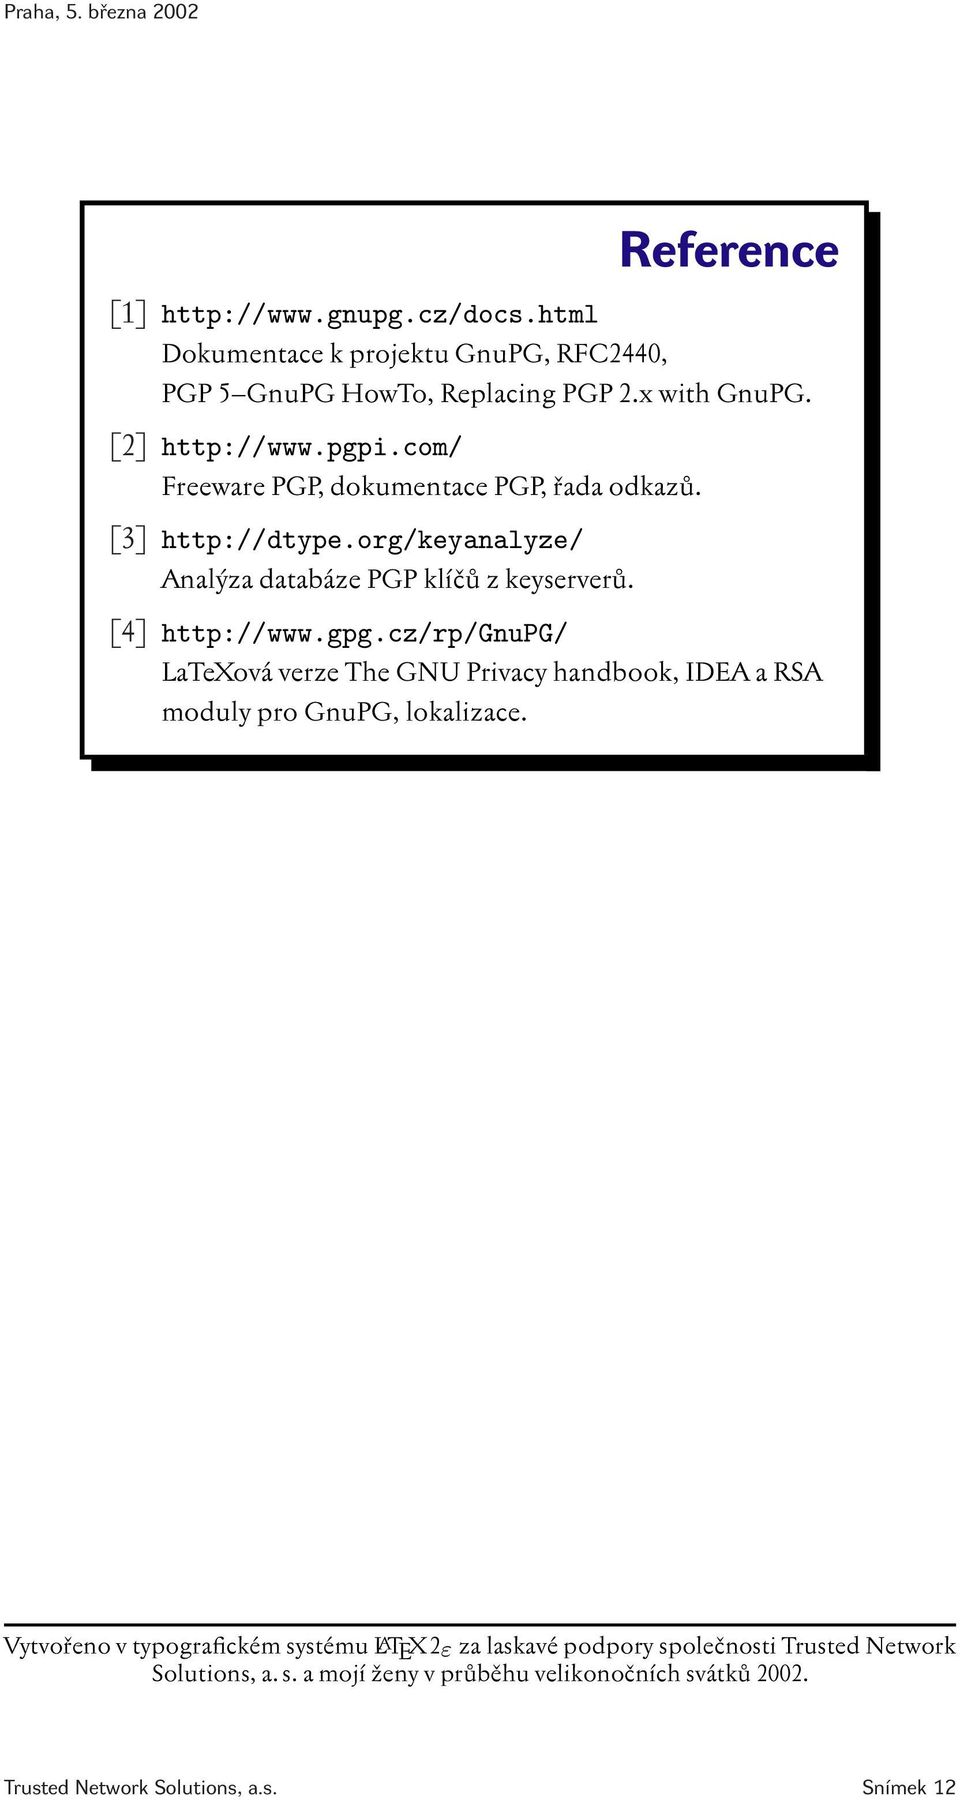 cz/rp/gnupg/ LaTeXová verze The GNU Privacy handbook, IDEA a RSA moduly pro GnuPG, lokalizace.